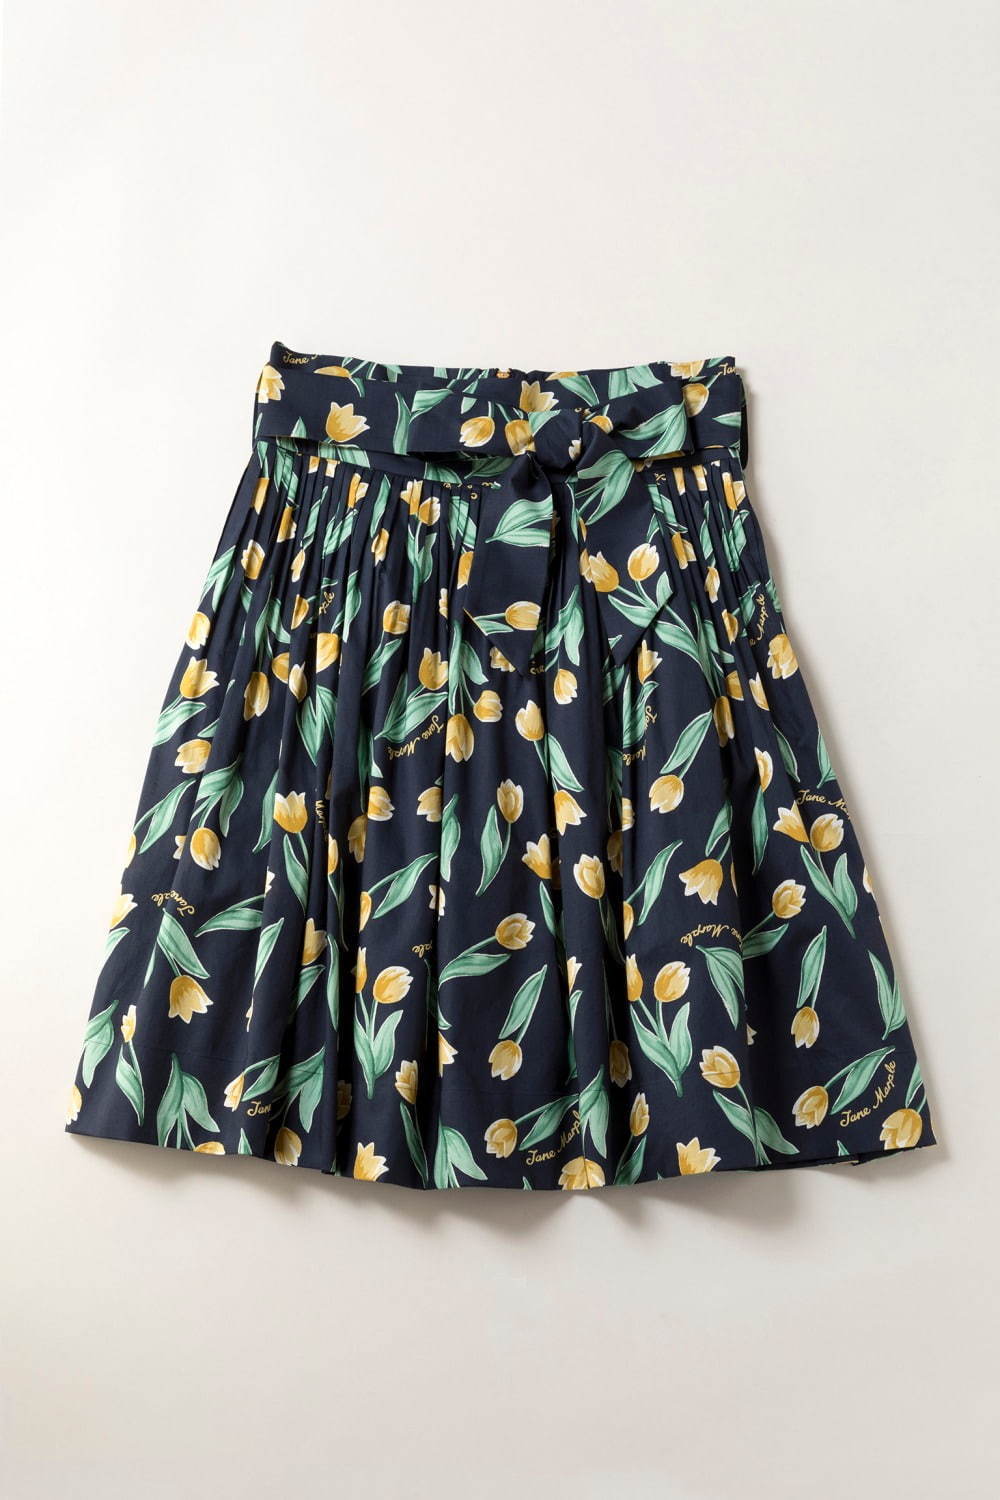 ジェーンマープル“チューリップ”柄の新作ワンピースやスカート、花刺繍 